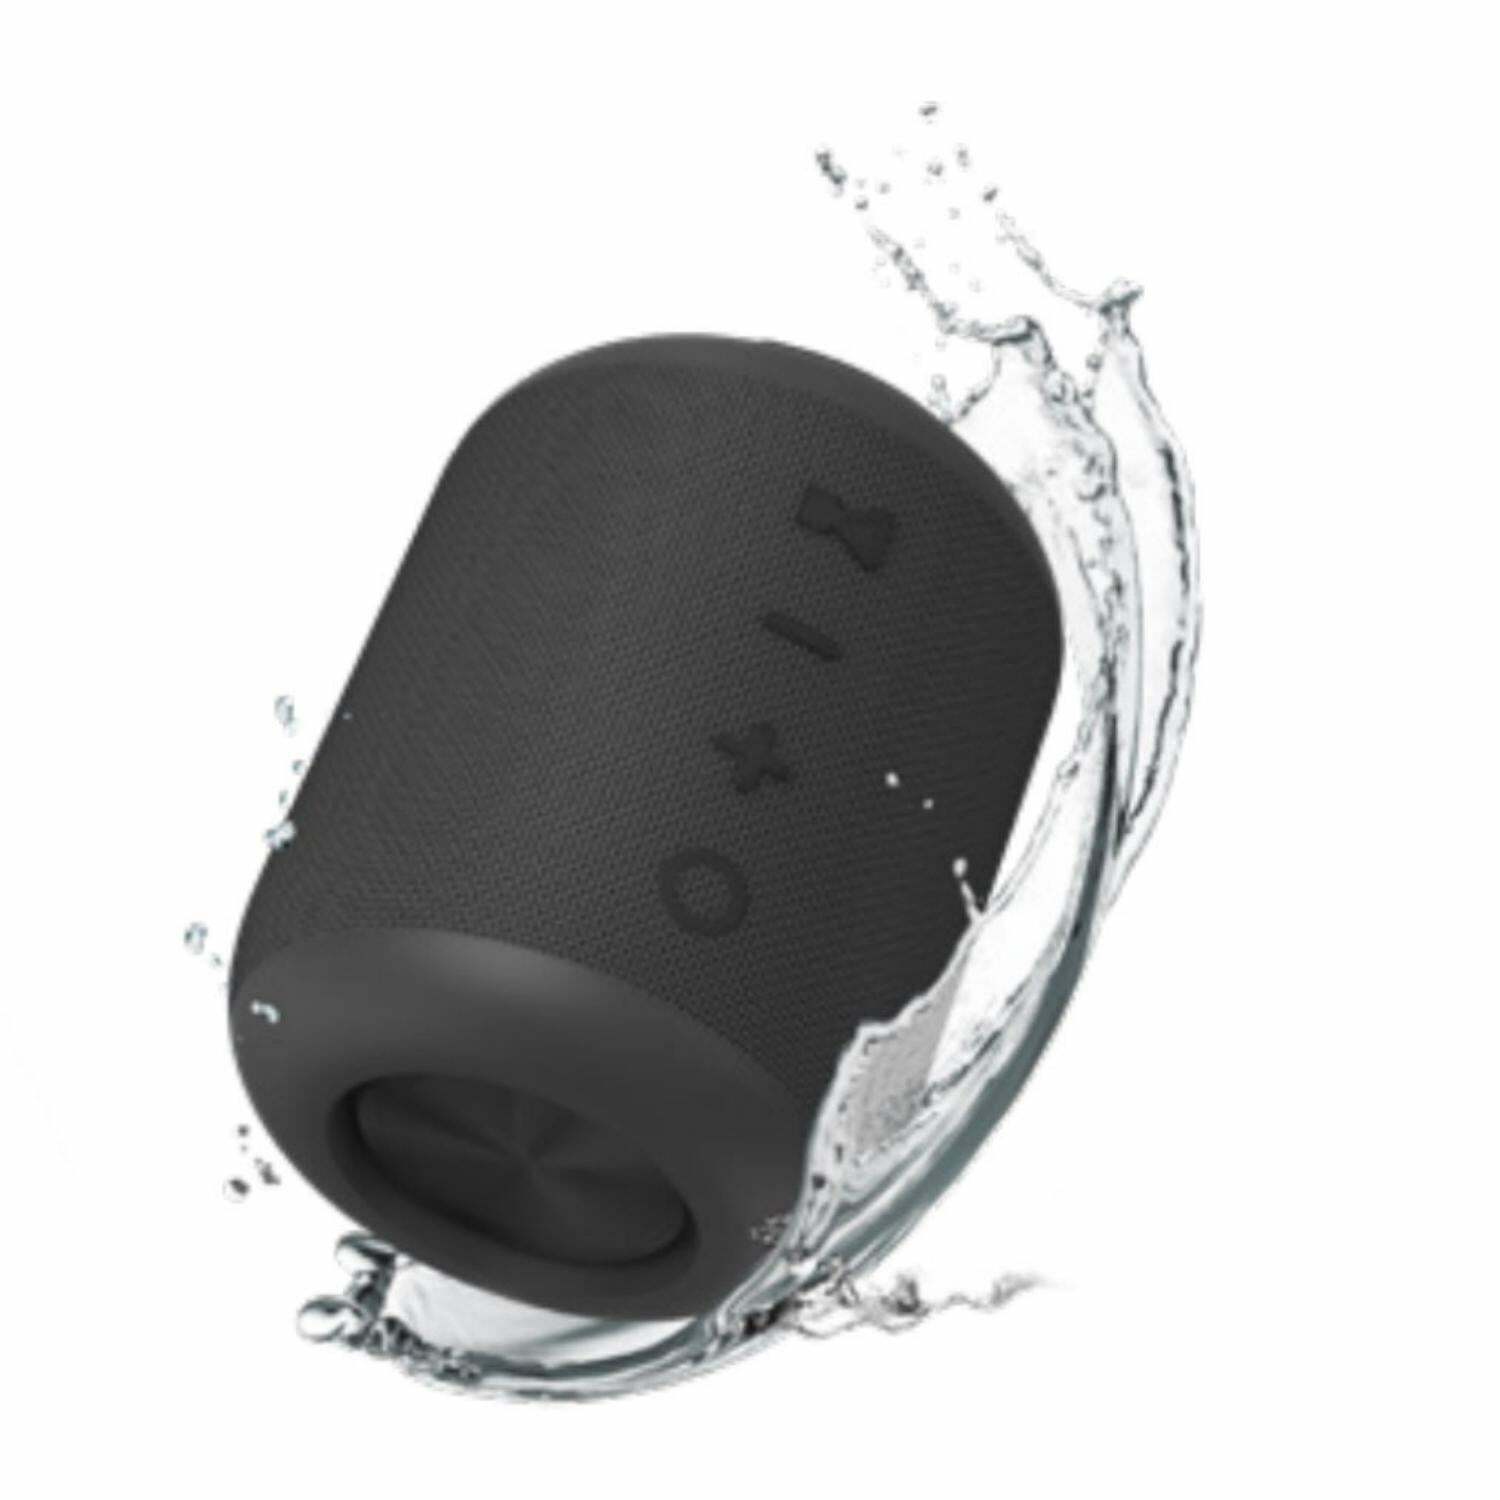 Klip Xtreme TitanPro KBS-200 Waterproof Portable Speaker Bluetooth Wireless - Black